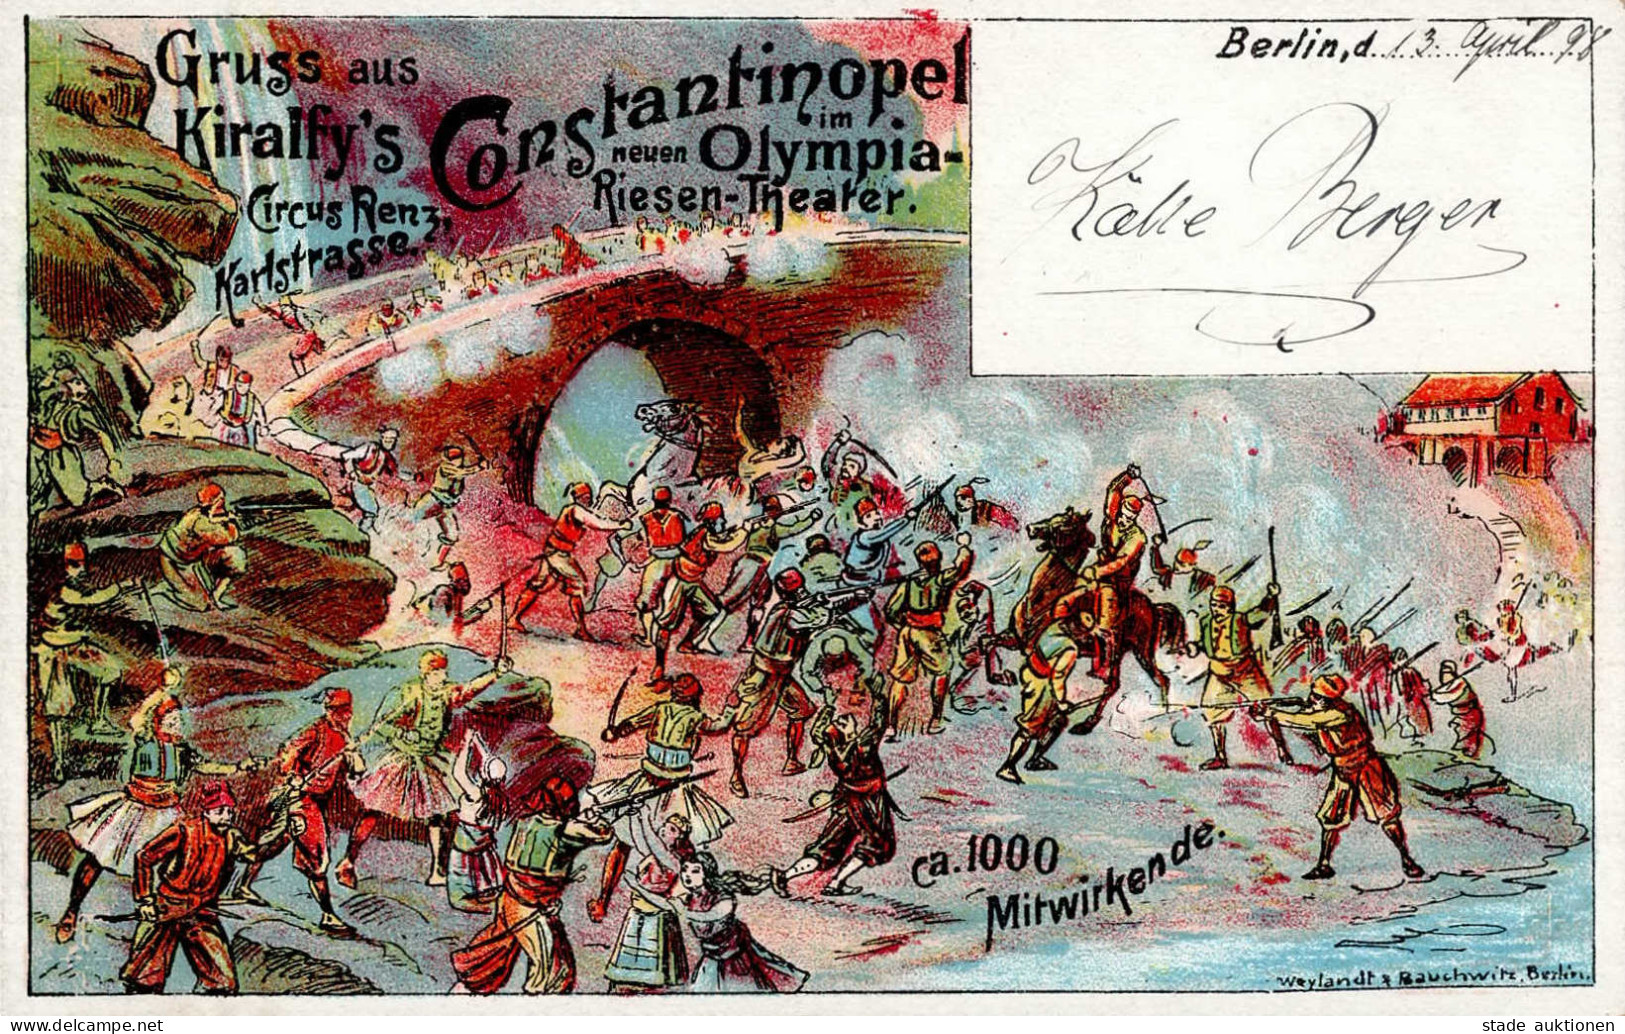 Zirkus Renz Berlin Constantinopel Im Neuen Olympia-Riesen-Theater I-II - Circus